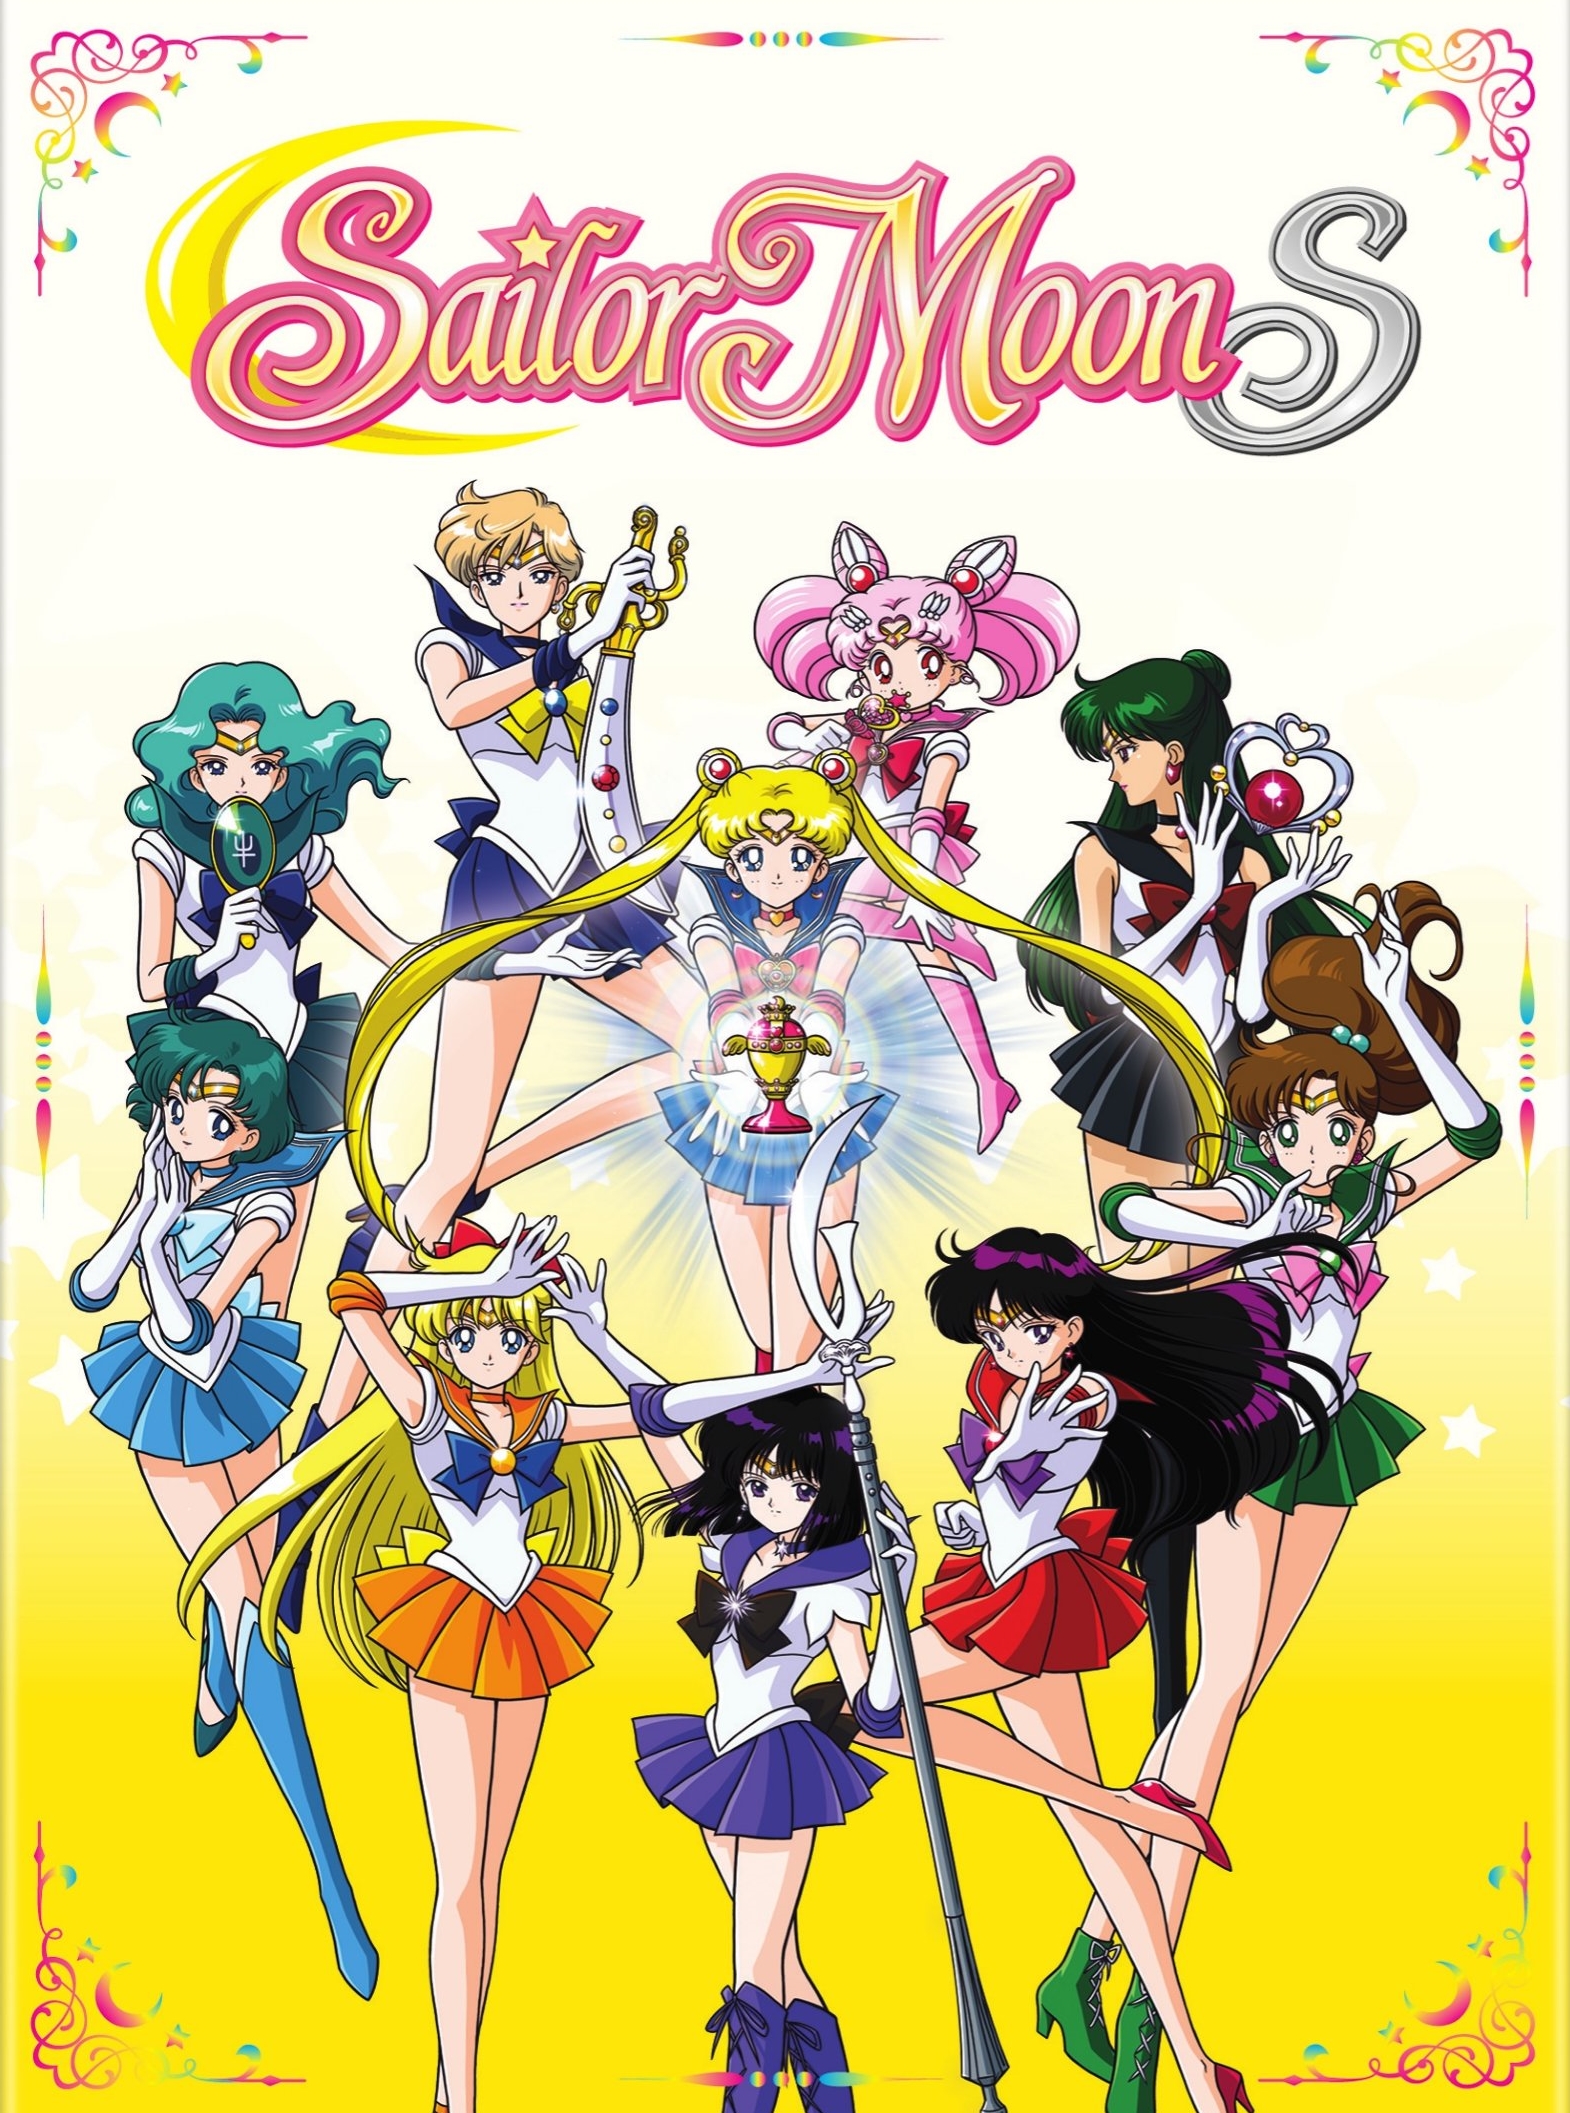 Sailor Moon S: Season 3 Part 2 [3 Discs] [DVD] - Best Buy